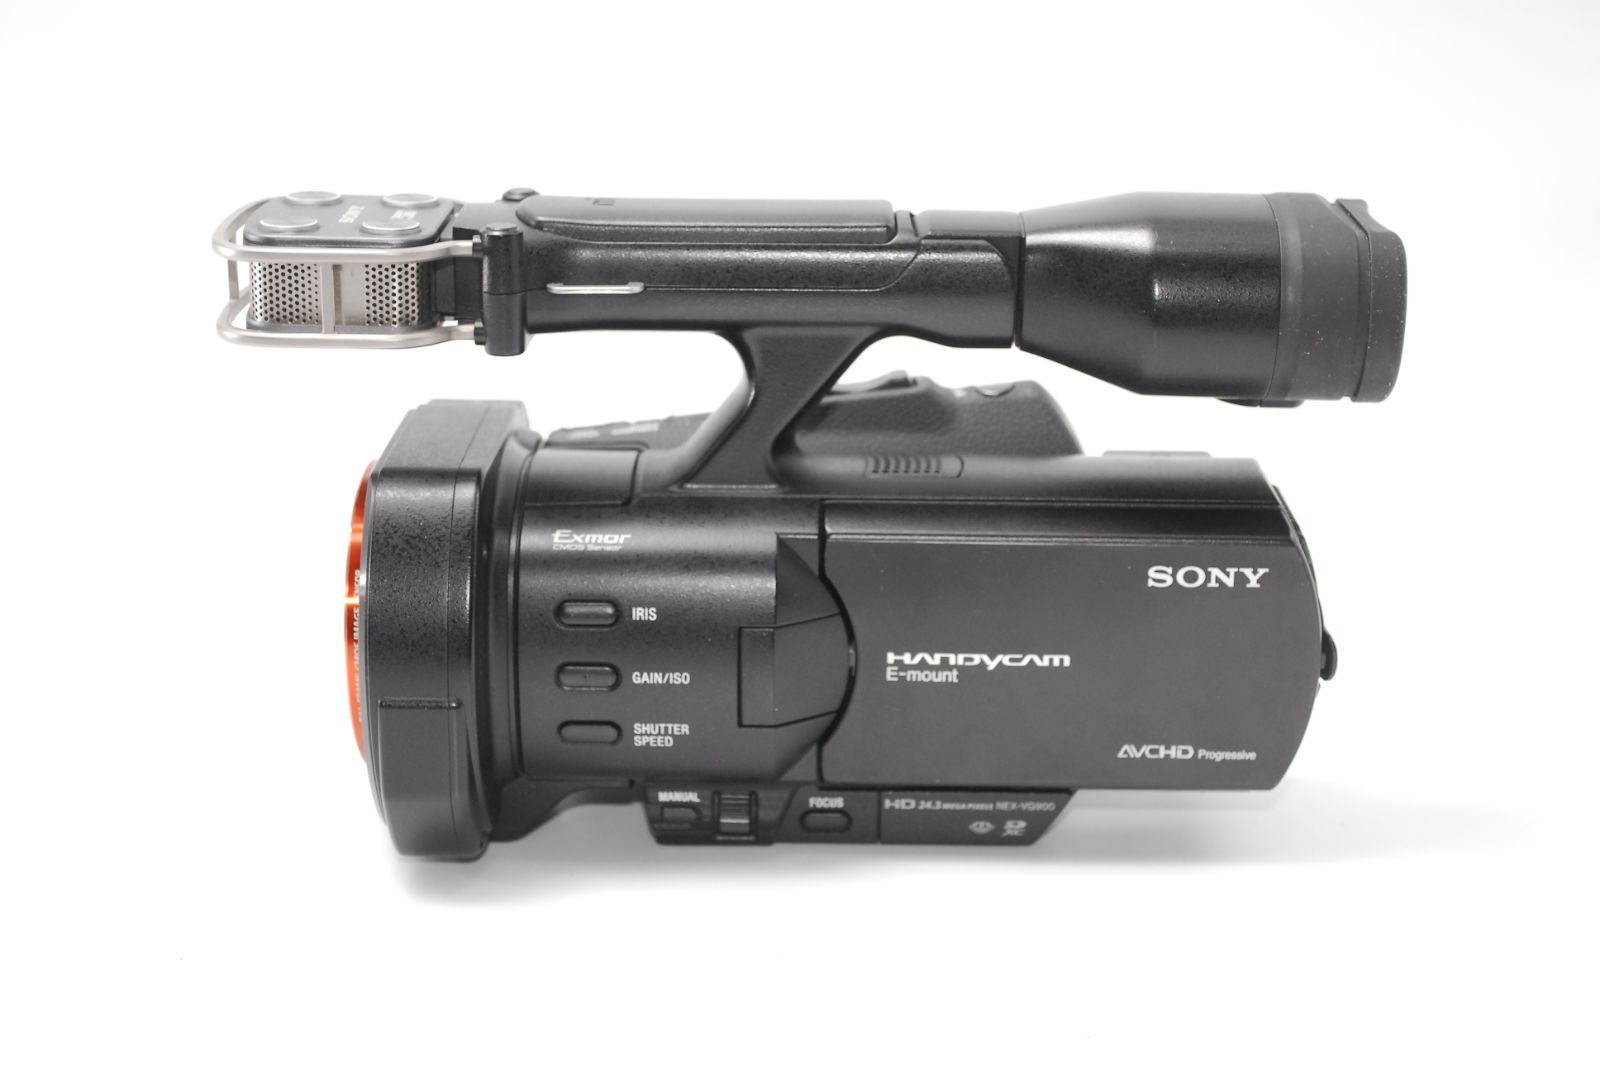 ソニー SONY レンズ交換式ビデオカメラ Handycam NEX-VG900 www